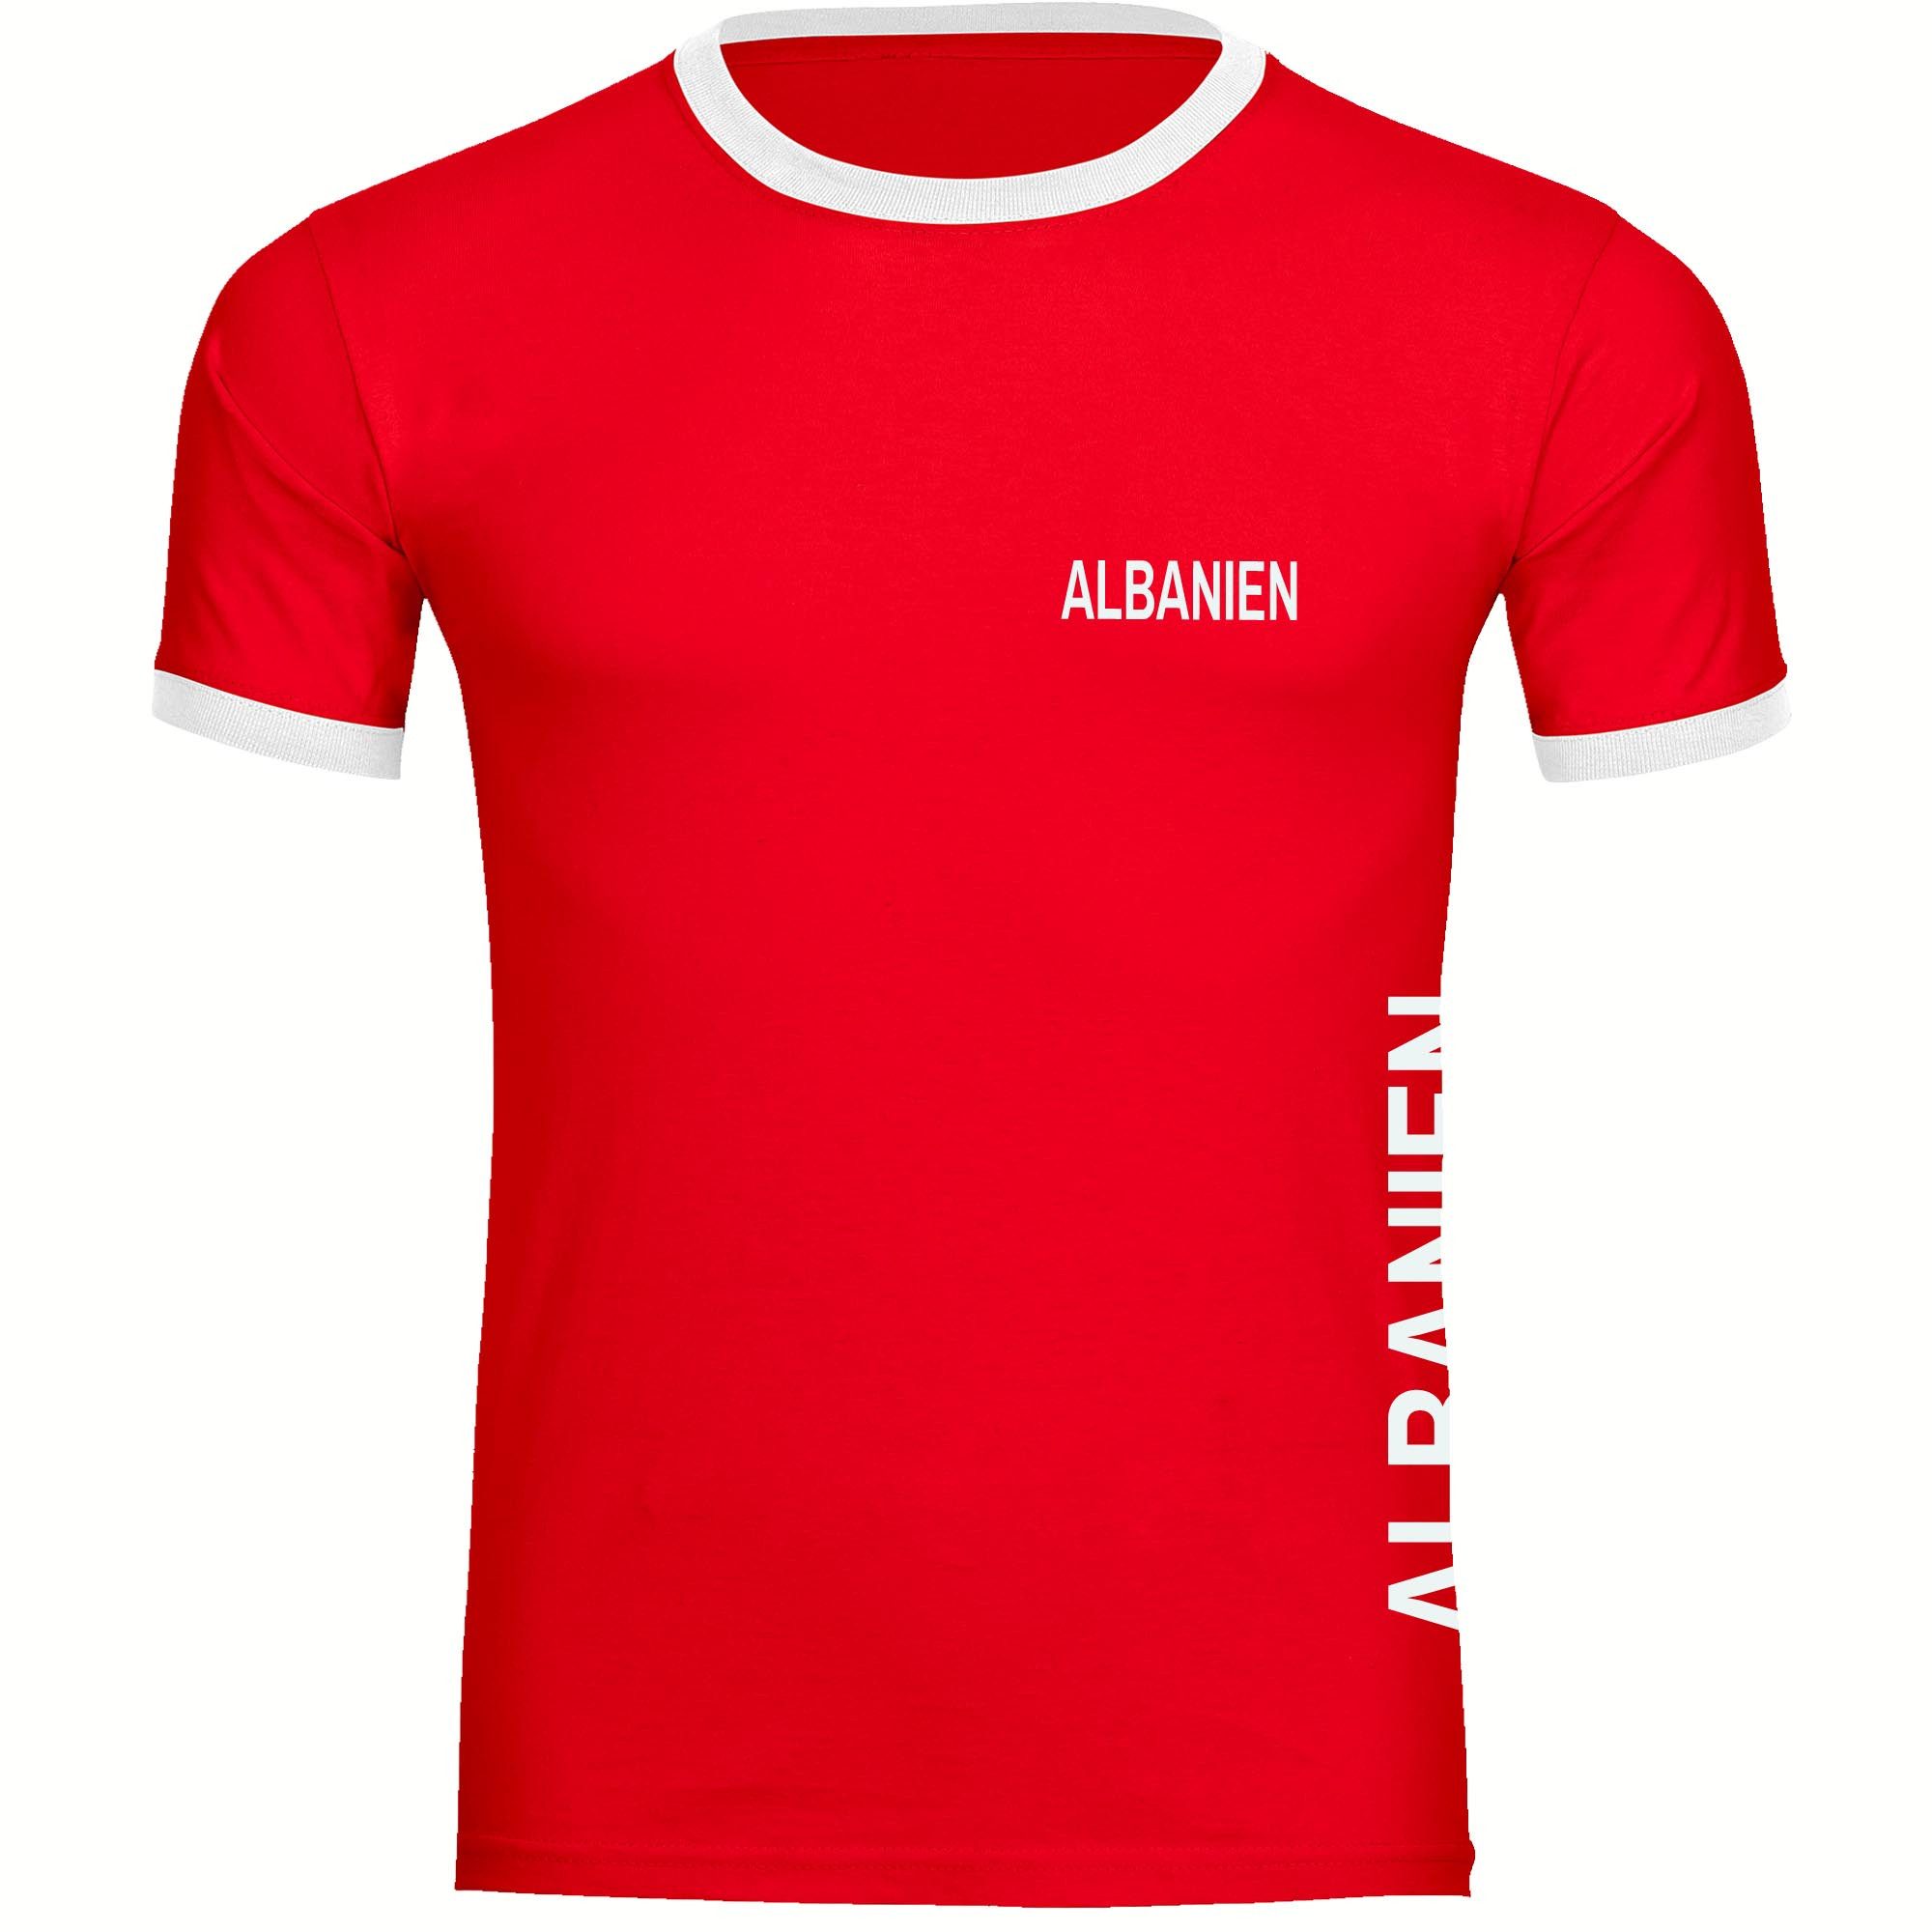 multifanshop T-Shirt Kontrast Albanien - Brust & Seite - Männer